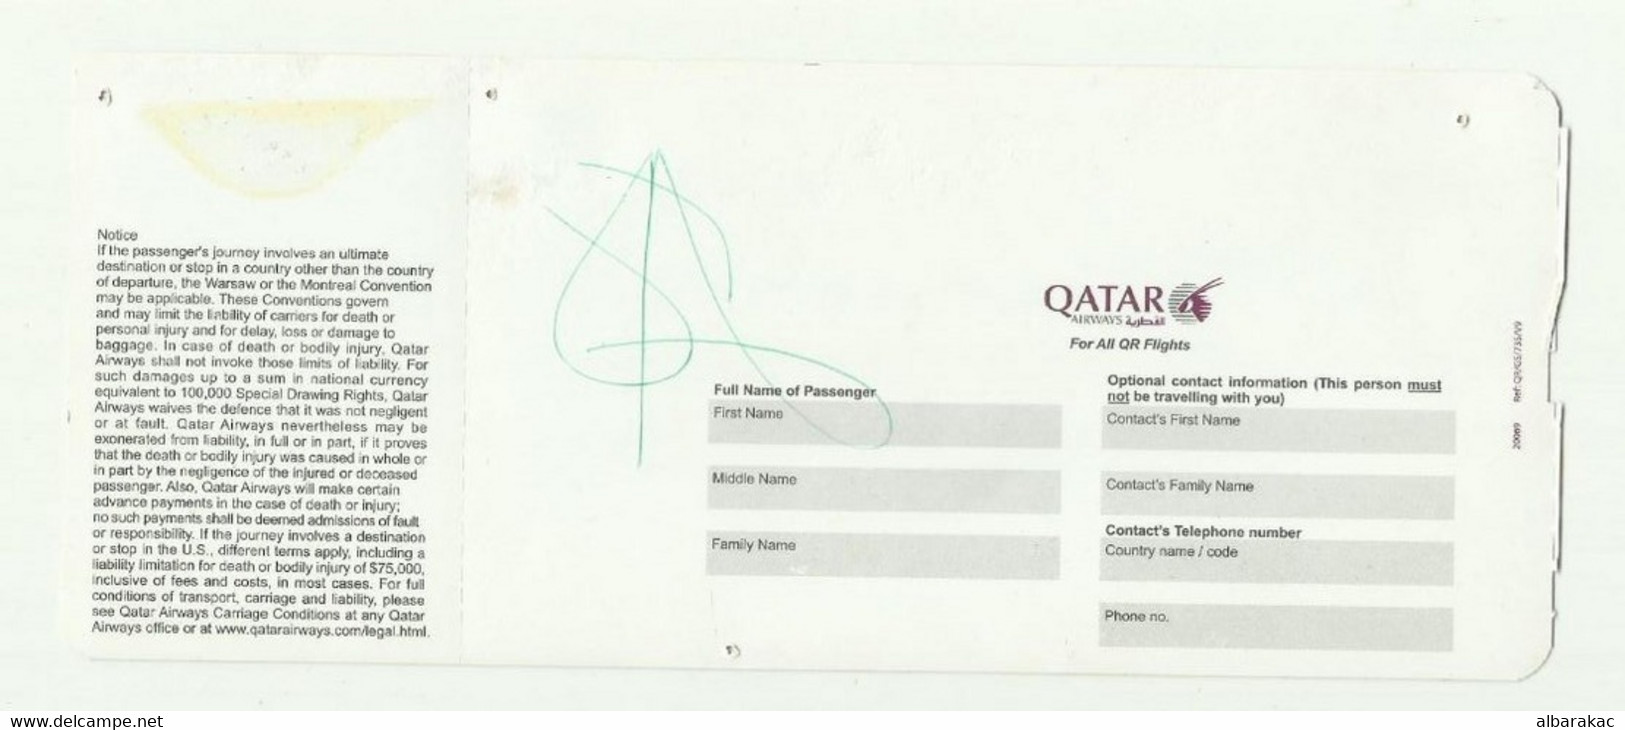 Qatar Airways Boarding Pass - Doha To Sydney - Monde